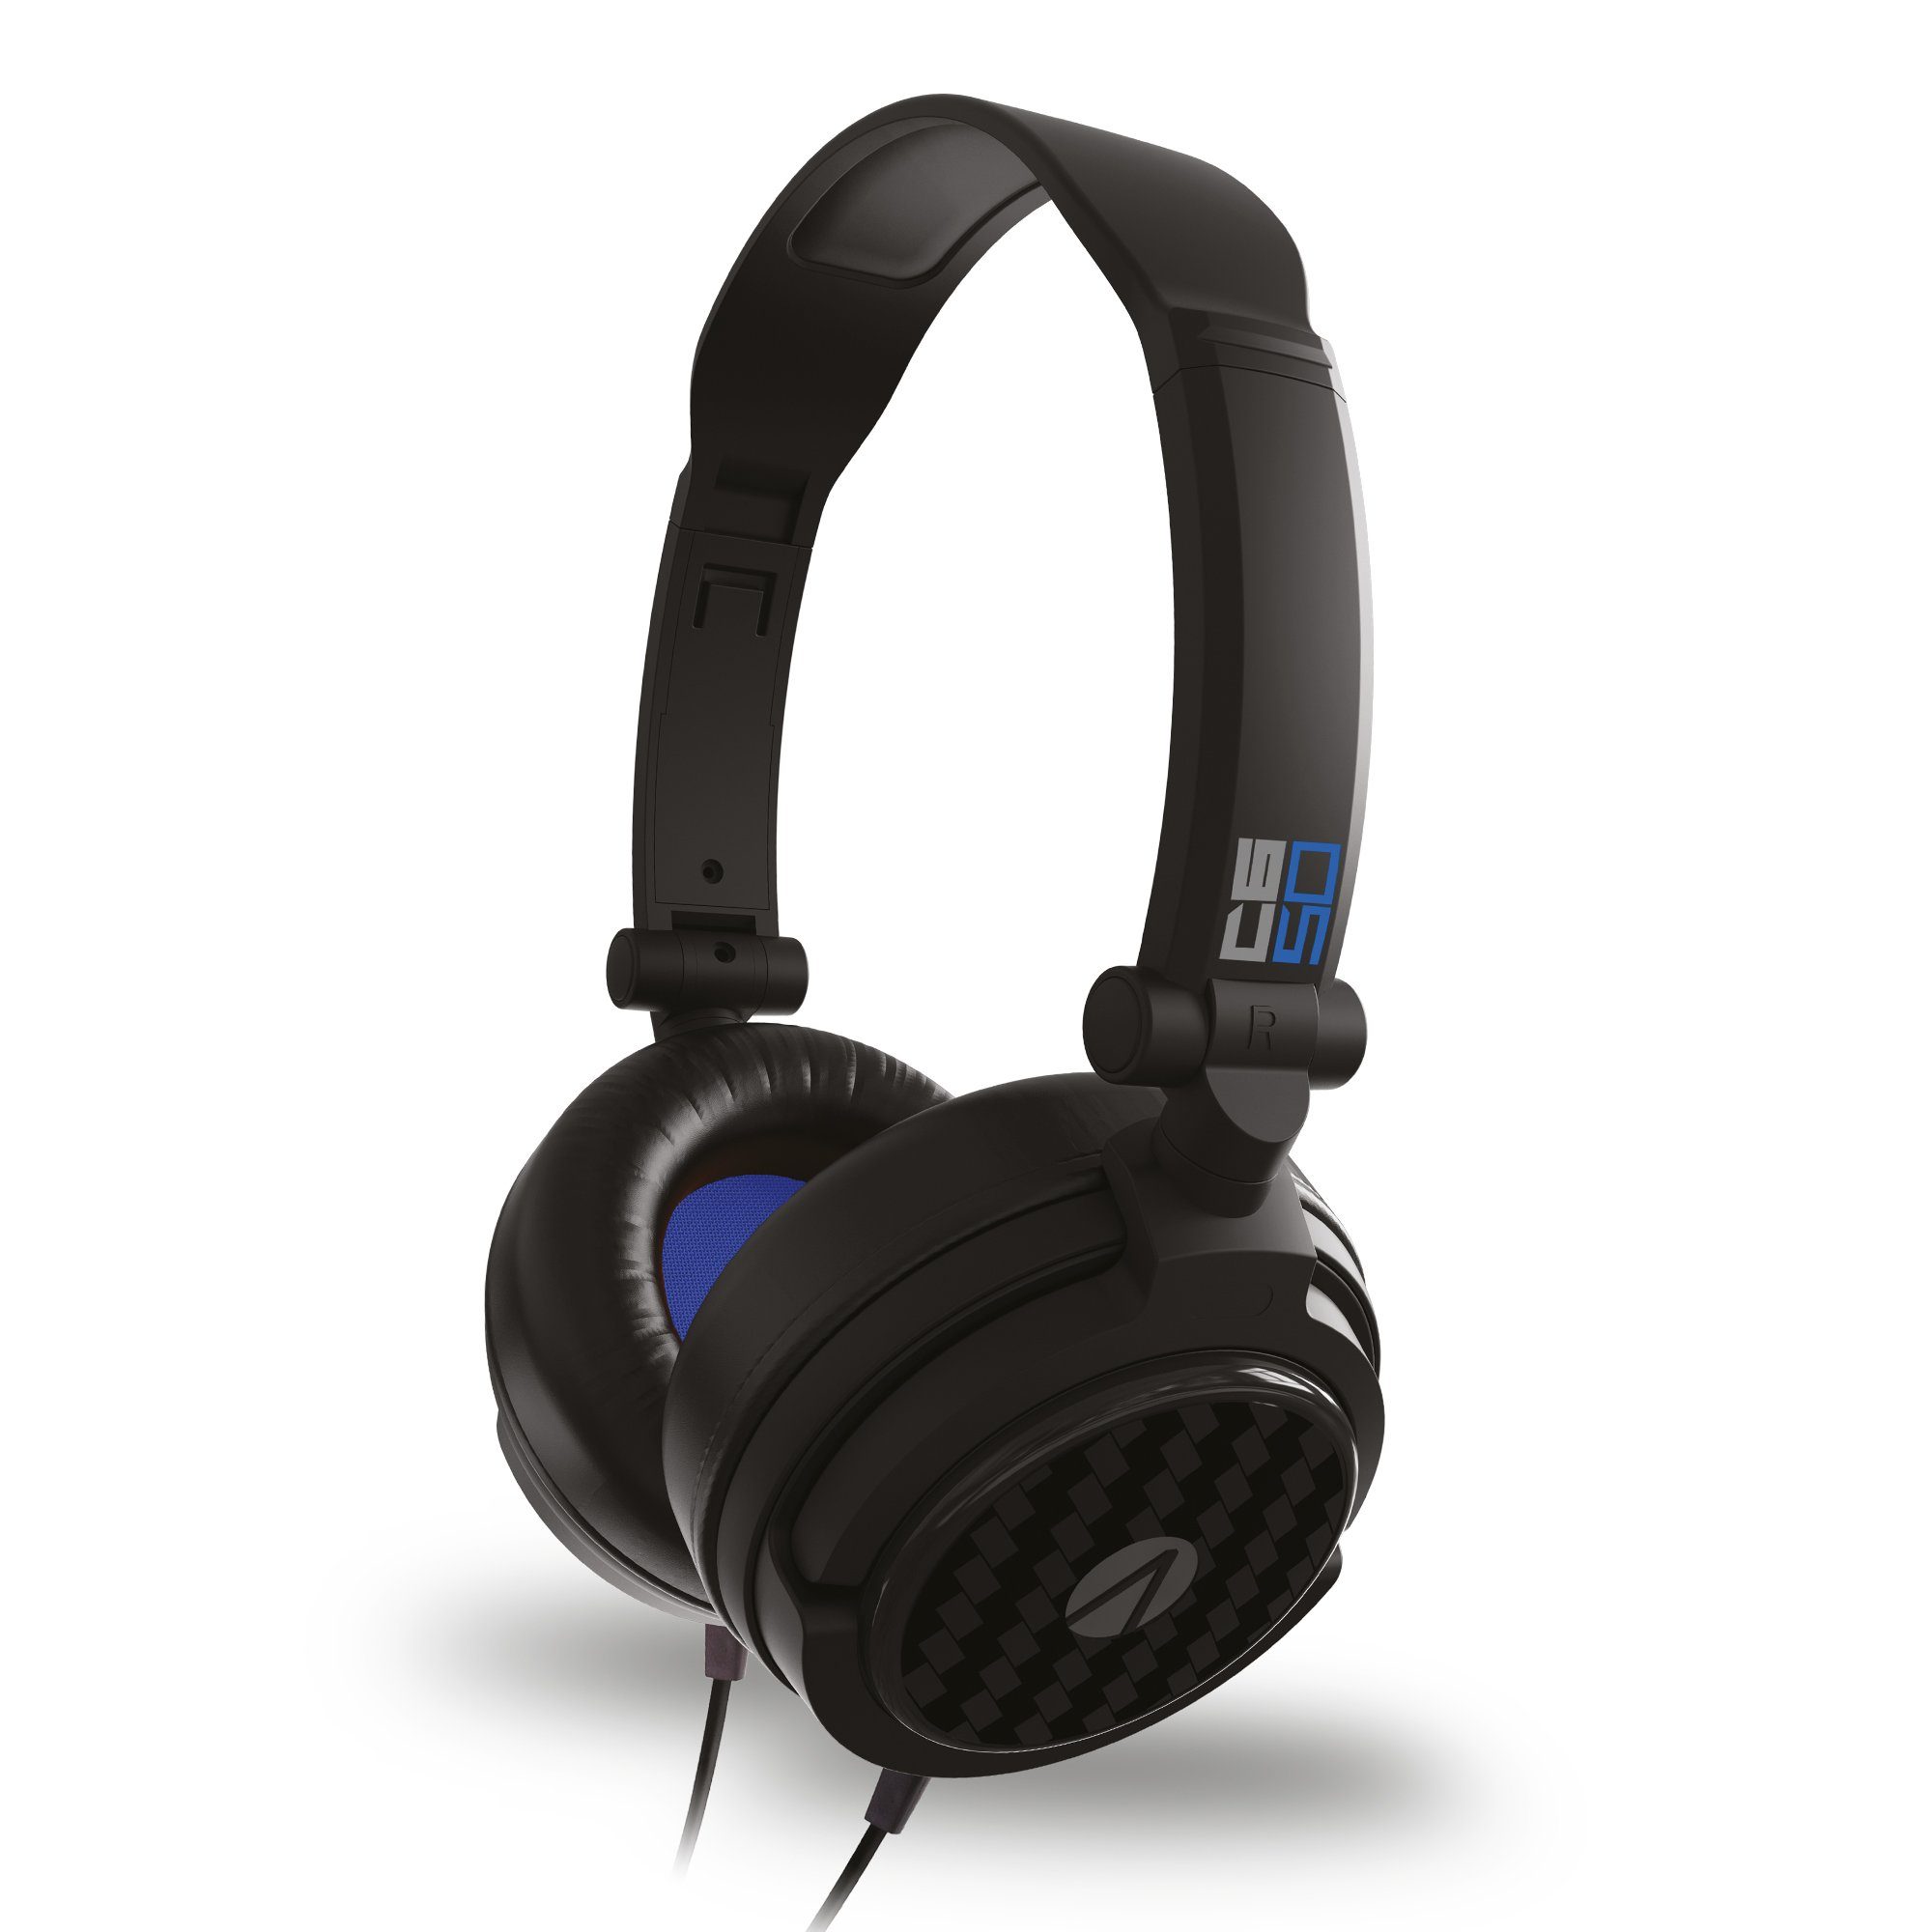 Stealth C6-50 Stereo-Headset Headset Gaming Multiformat schwarz Verpackung) Stereo (Plastikfreie